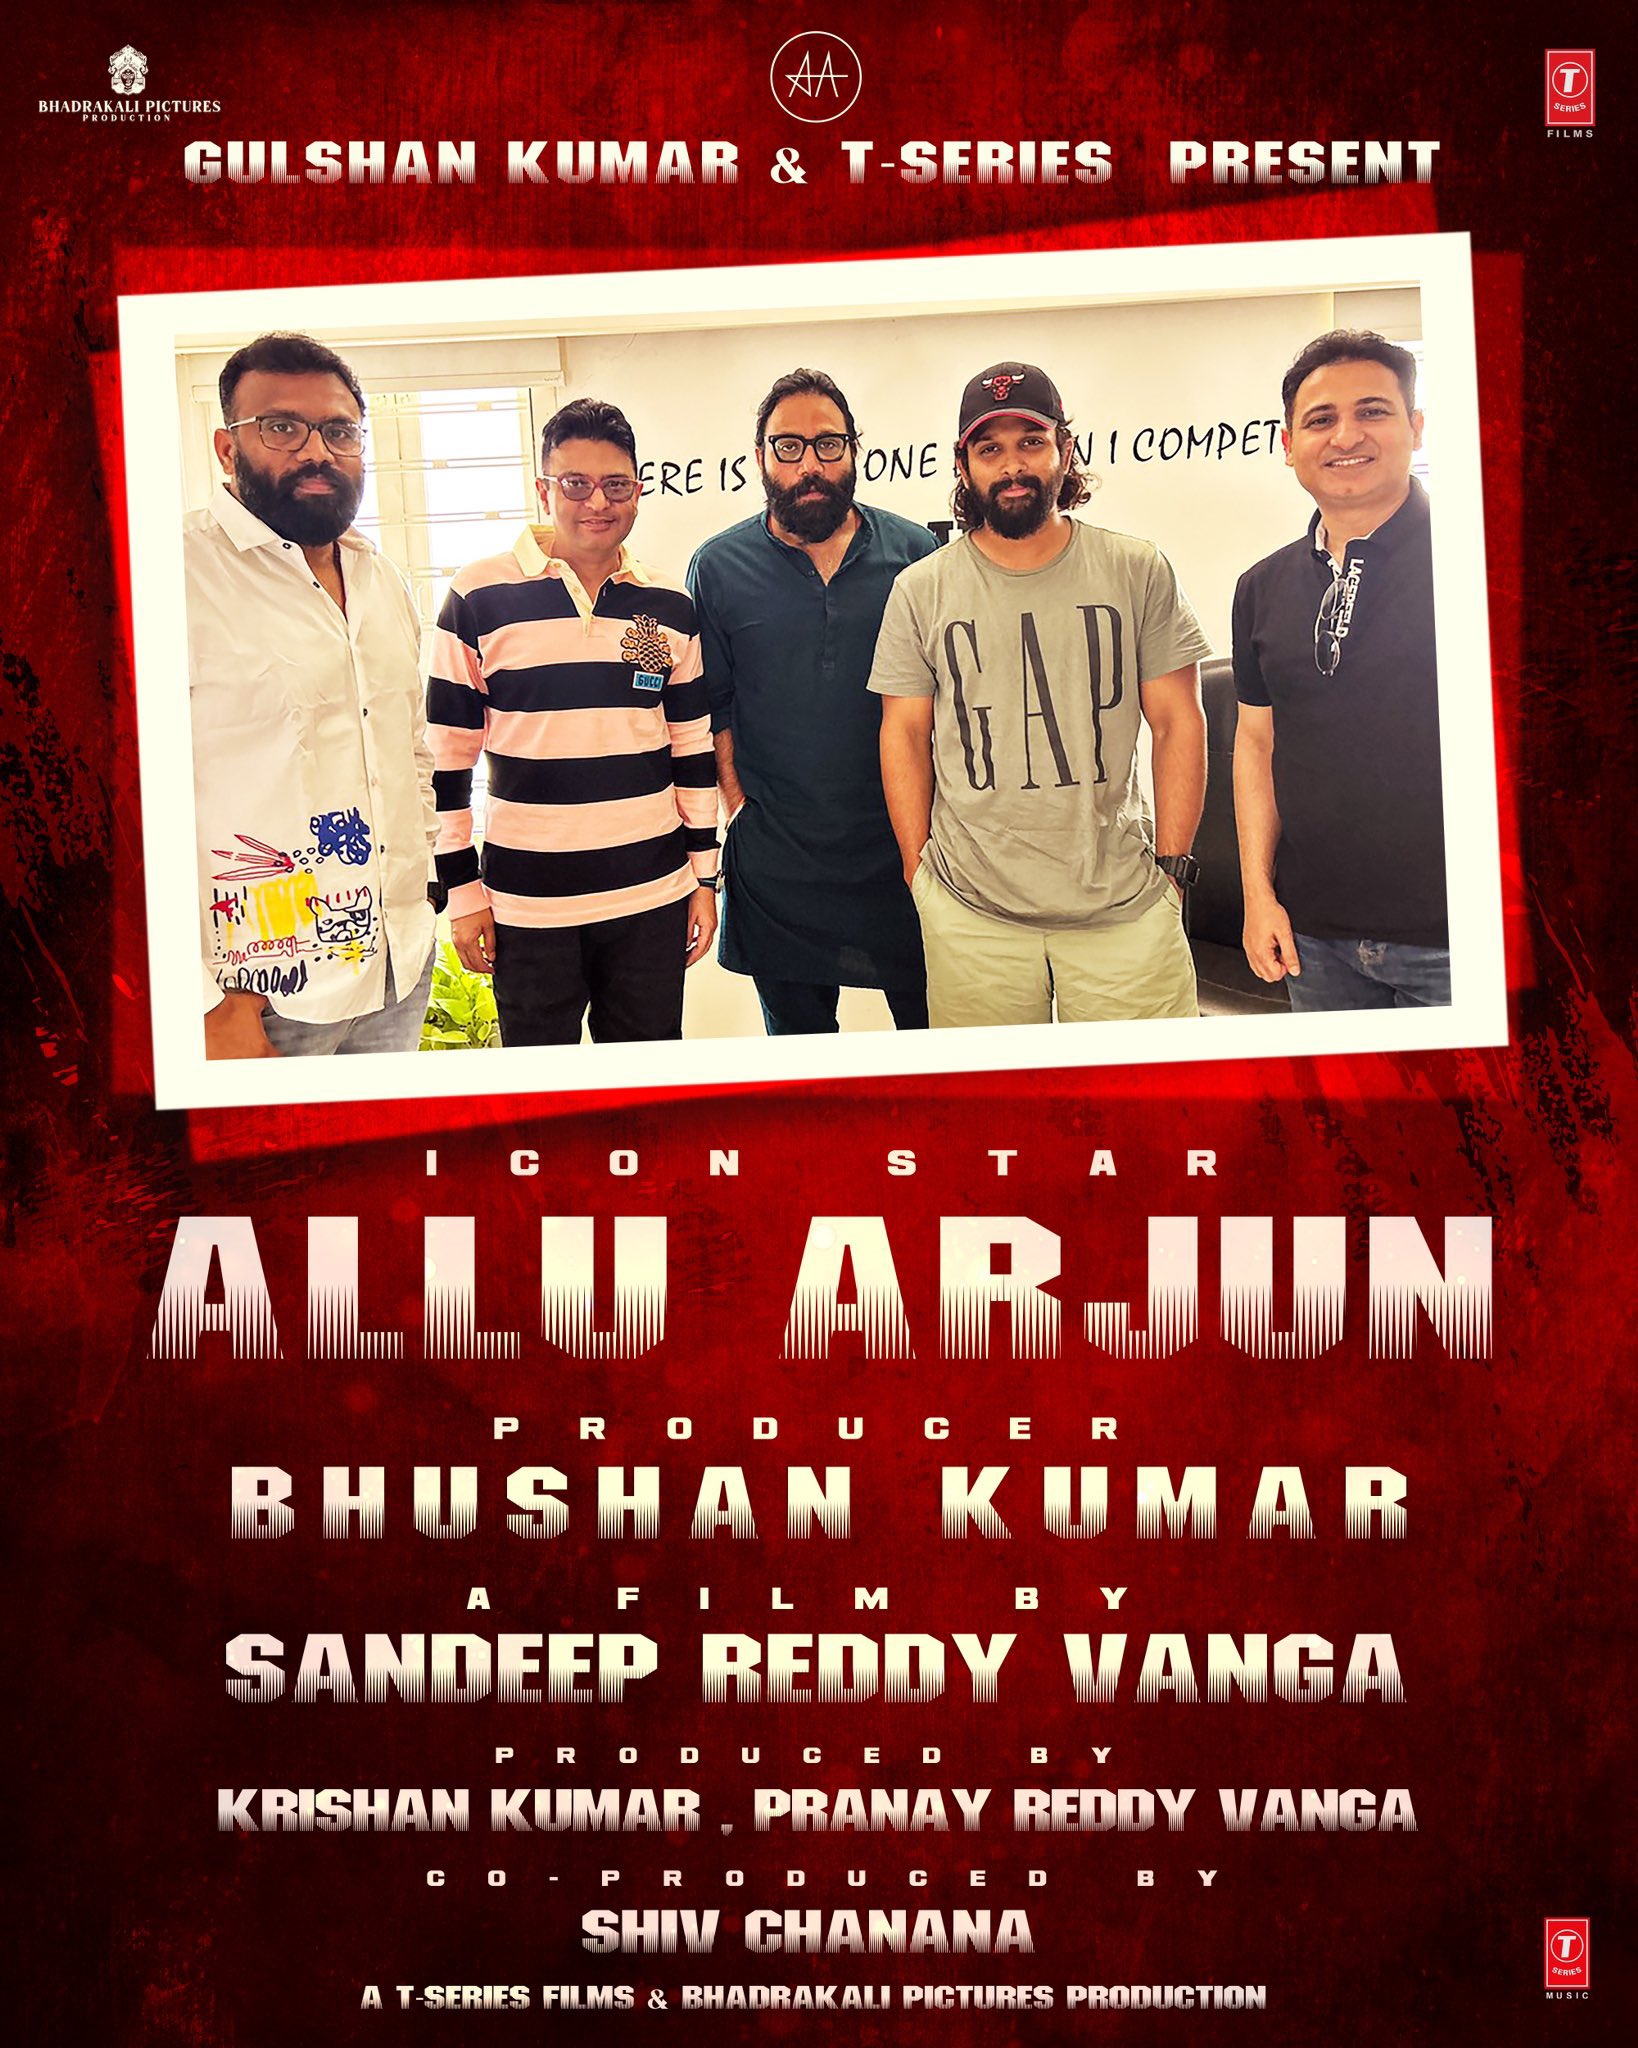 Allu Arjun teams up with Sandeep Reddy Vanga